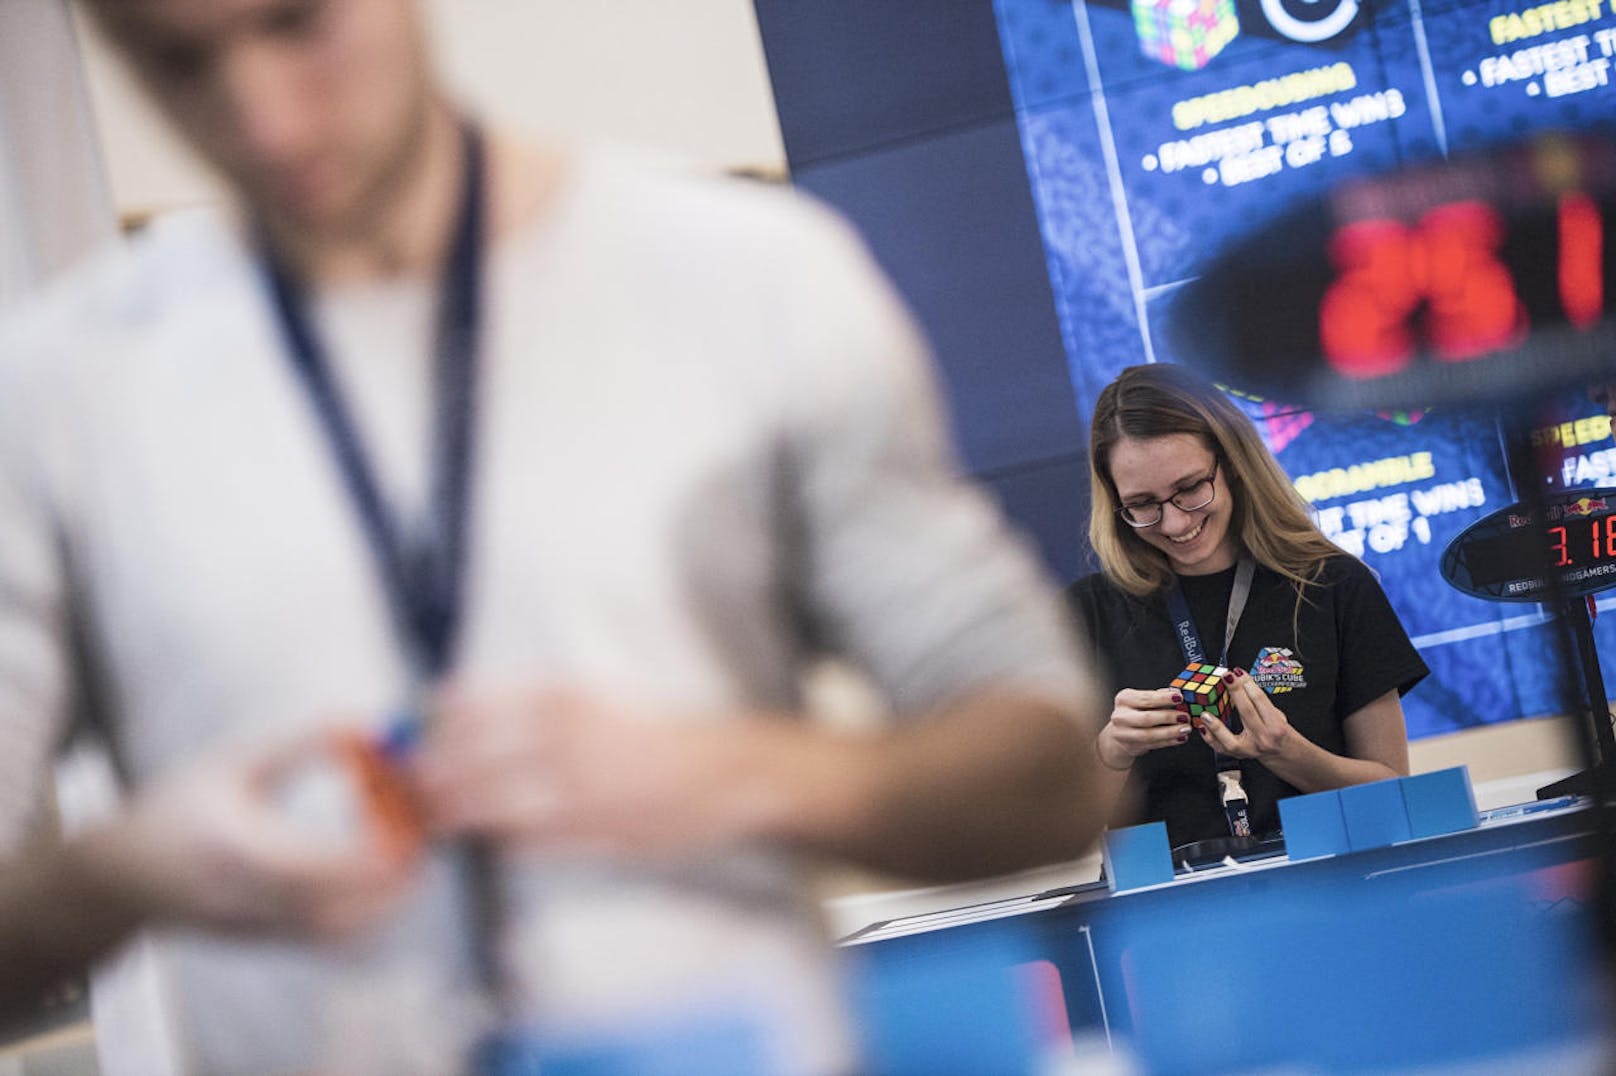 Die Rubiks Cube-WM findet unter dem Red Bull Mind Gamers-Banner statt. Dabei will der Energydrinkhersteller mentale Herausforderungen jeglicher Art anbieten.